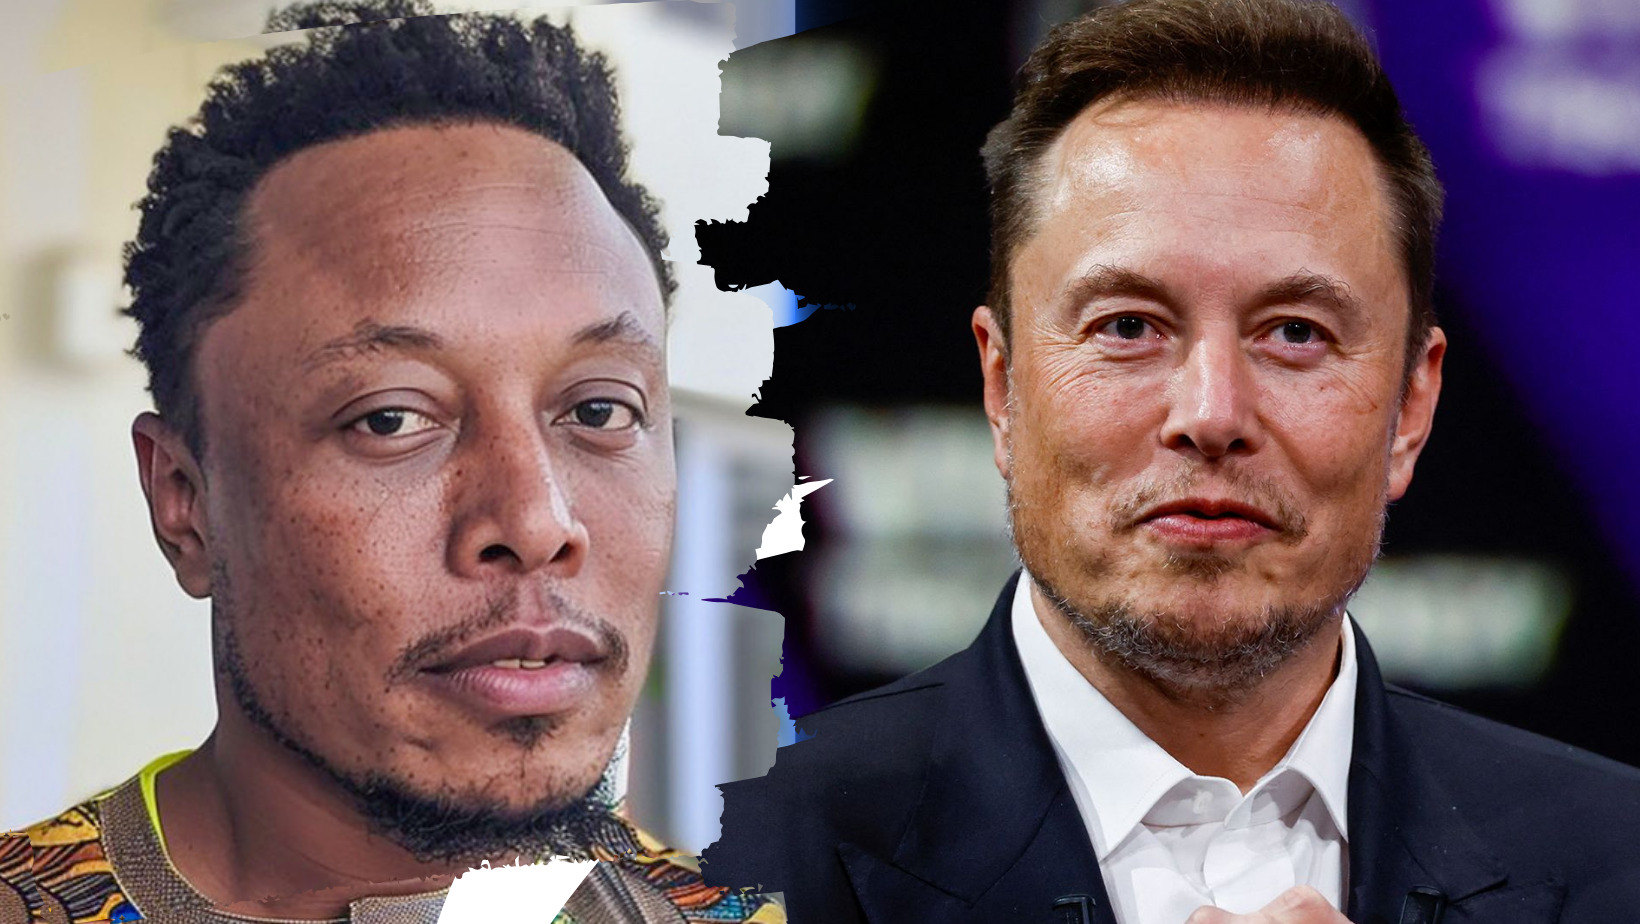 Keniano afirma ser hijo de Elon Musk y busca reunificación familiar